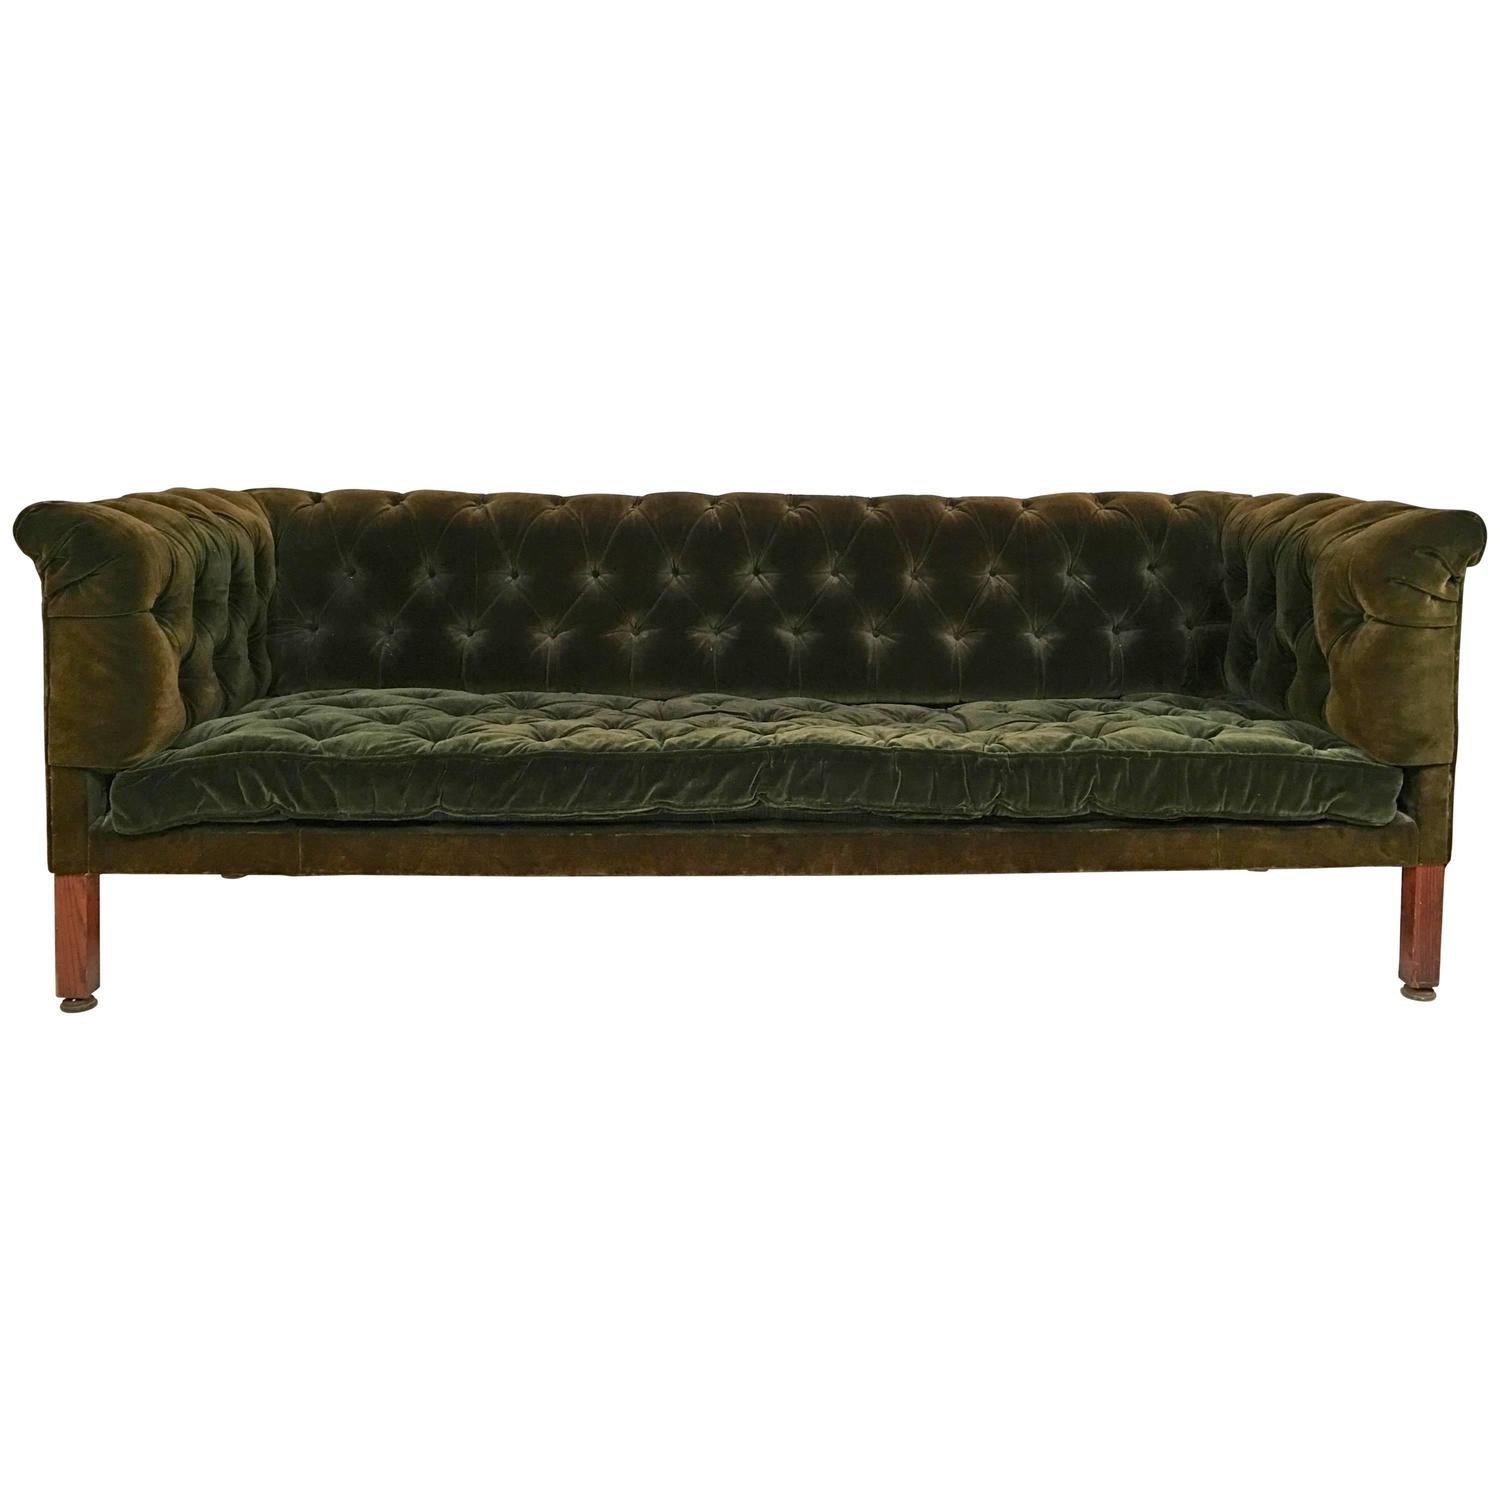 19th Century Green Tufted Velvet Chesterfield Sofa At 1stdibs